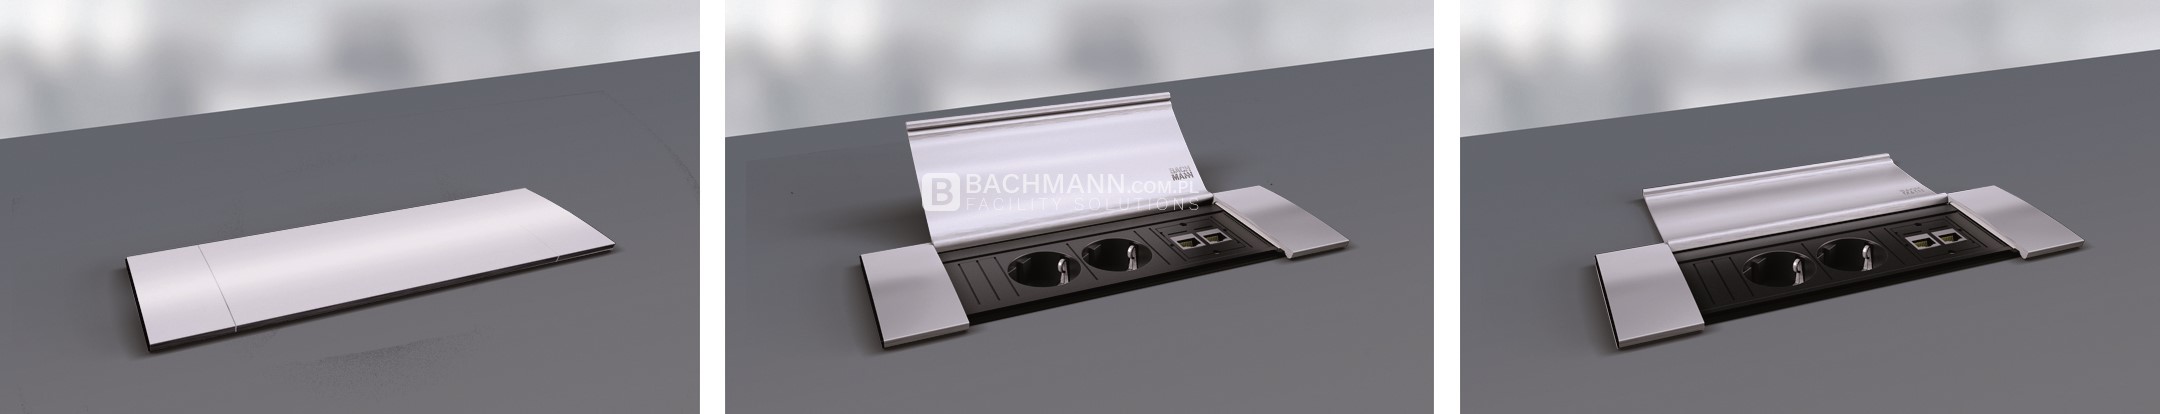 Mediaport Bachmann Power Frame Cover